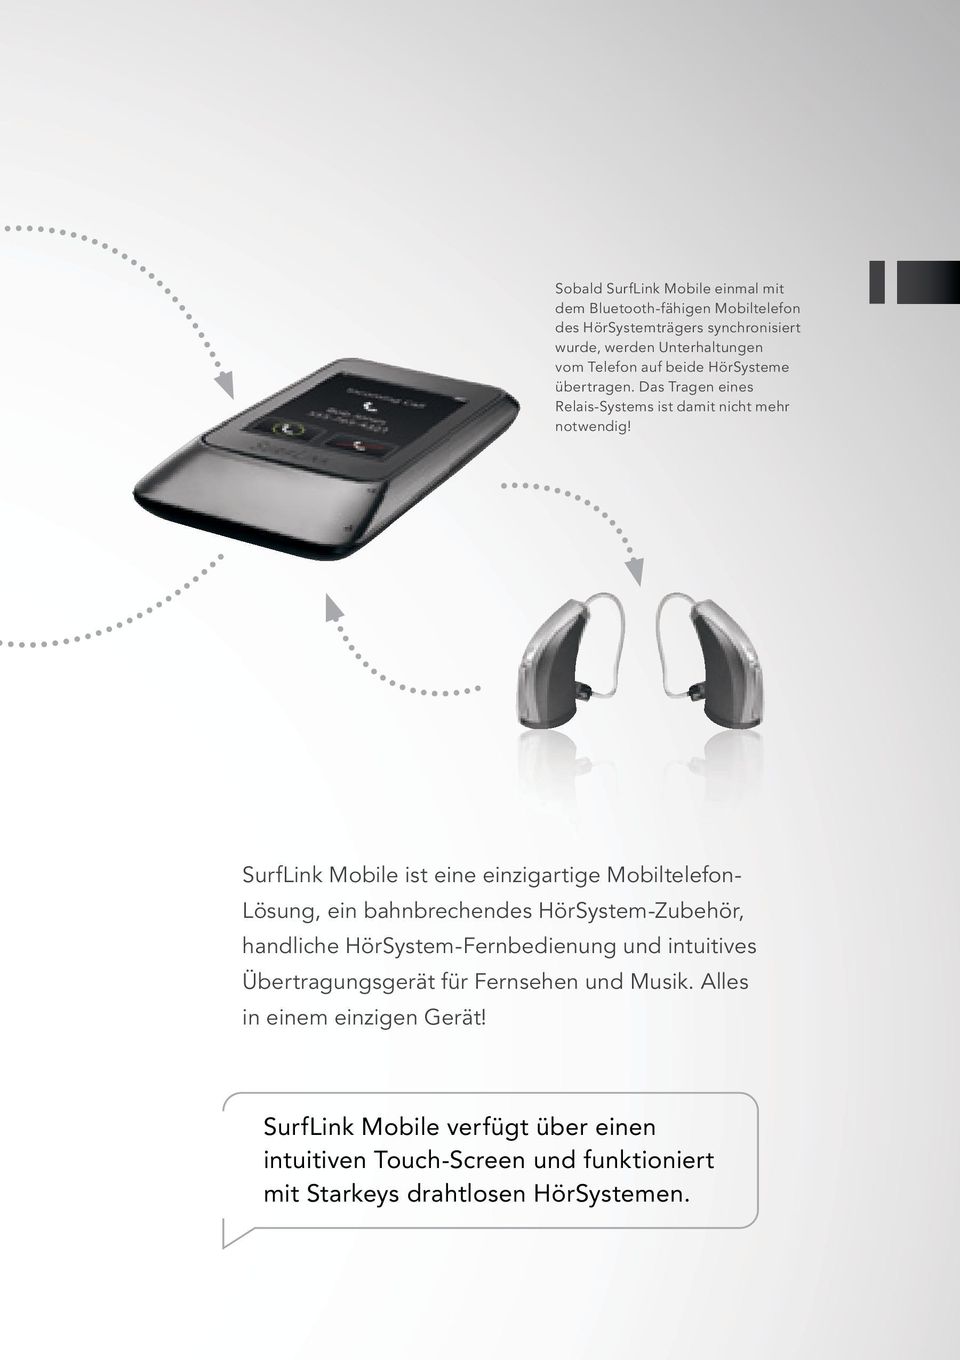 SurfLink Mobile ist eine einzigartige Mobiltelefon- Lösung, ein bahnbrechendes HörSystem-Zubehör, handliche HörSystem-Fernbedienung und